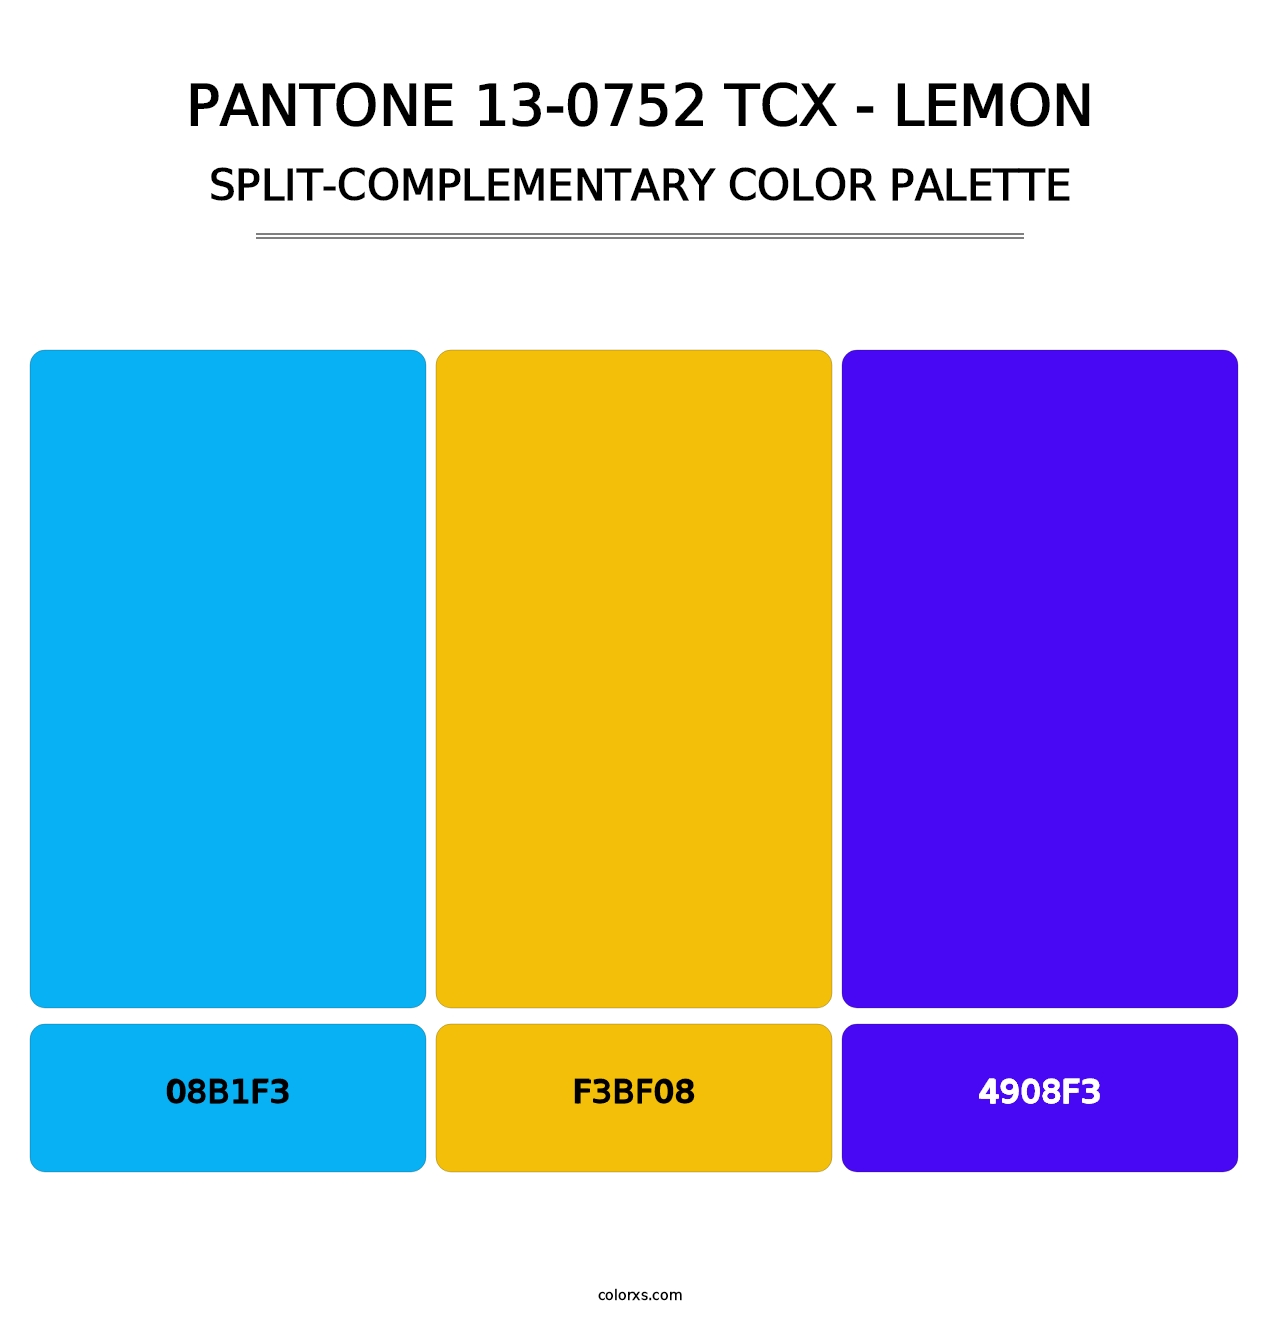 PANTONE 13-0752 TCX - Lemon - Split-Complementary Color Palette